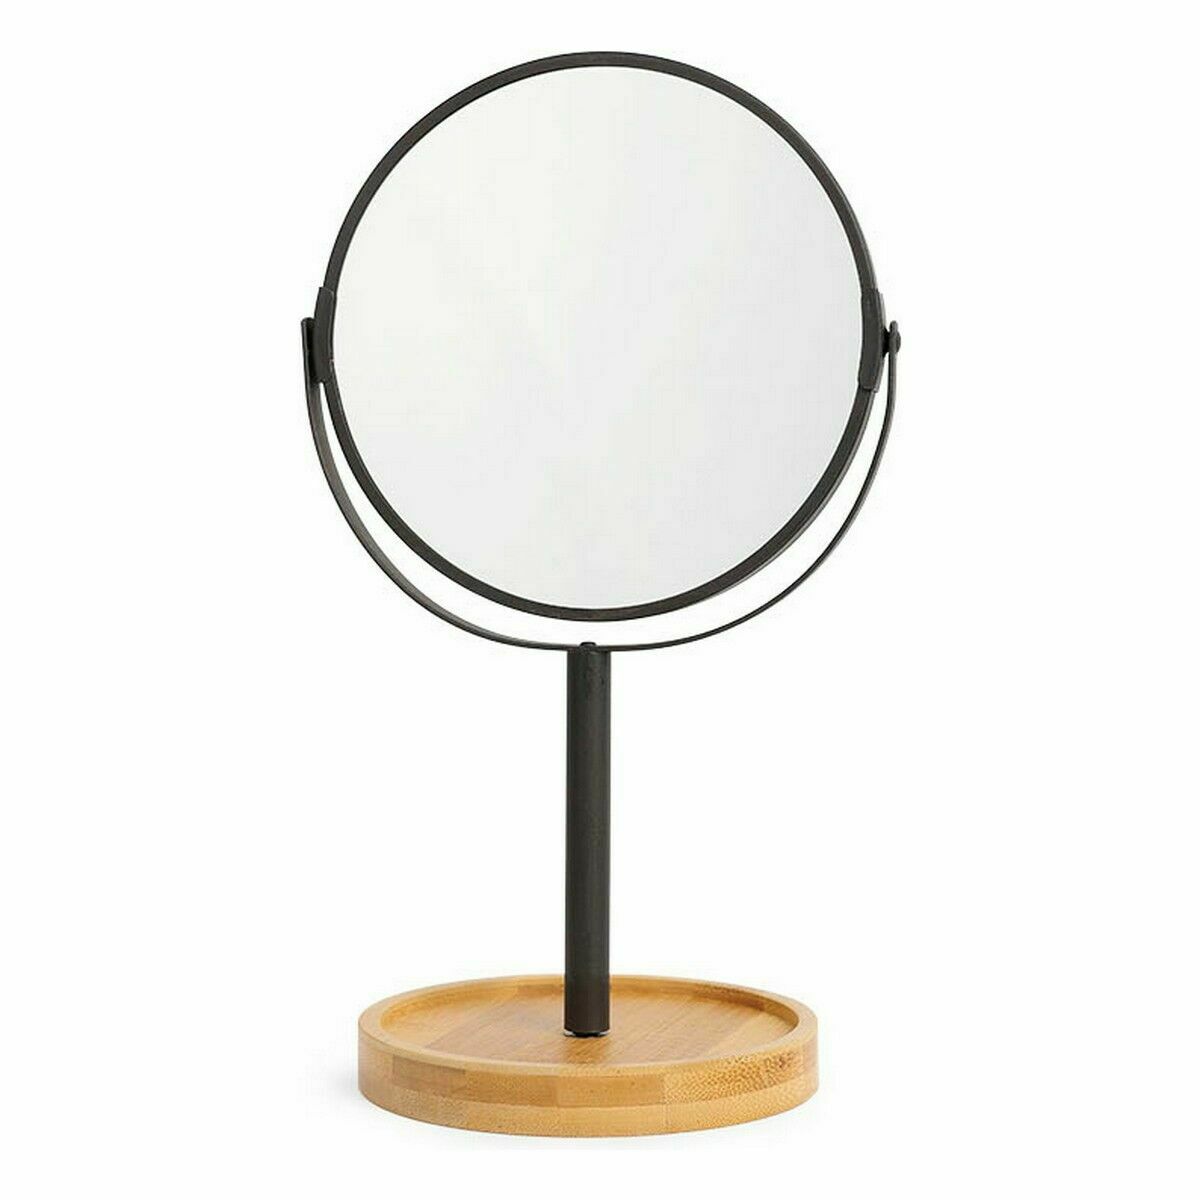 Miroir Grossissant Confortime Double 30,5 x 17,5 x 11,5 cm